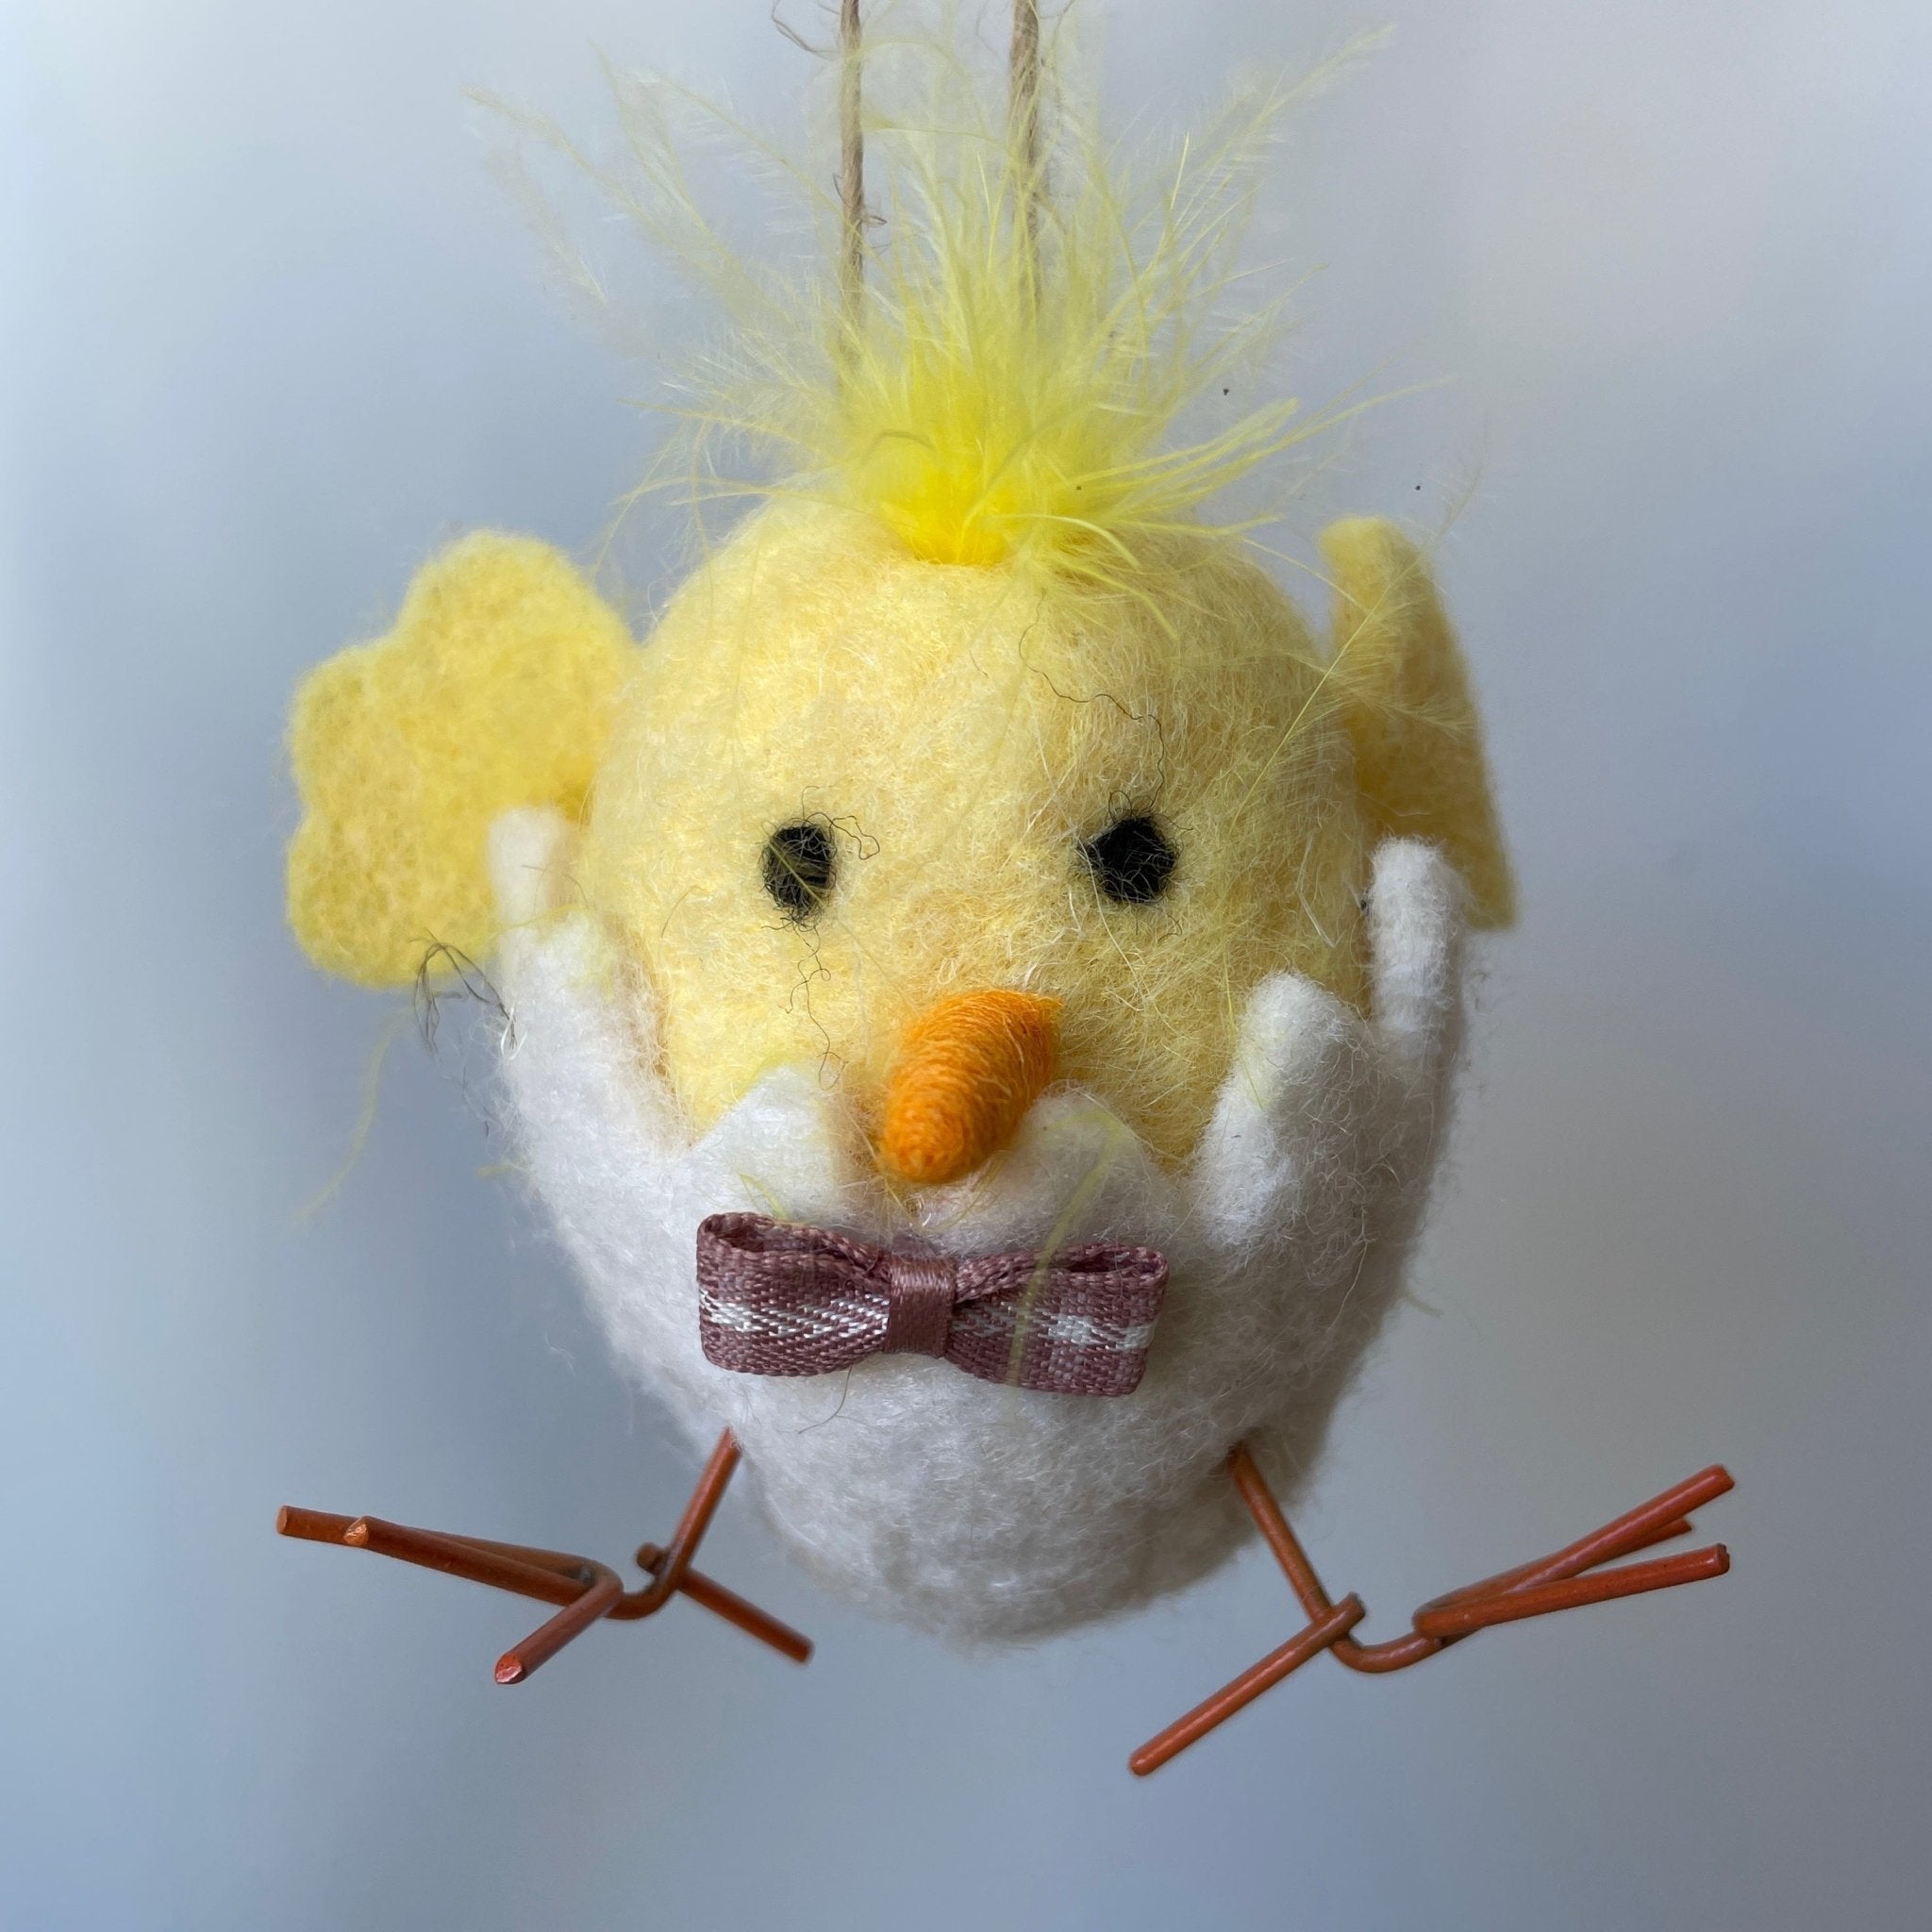 Mr Chick Ornament